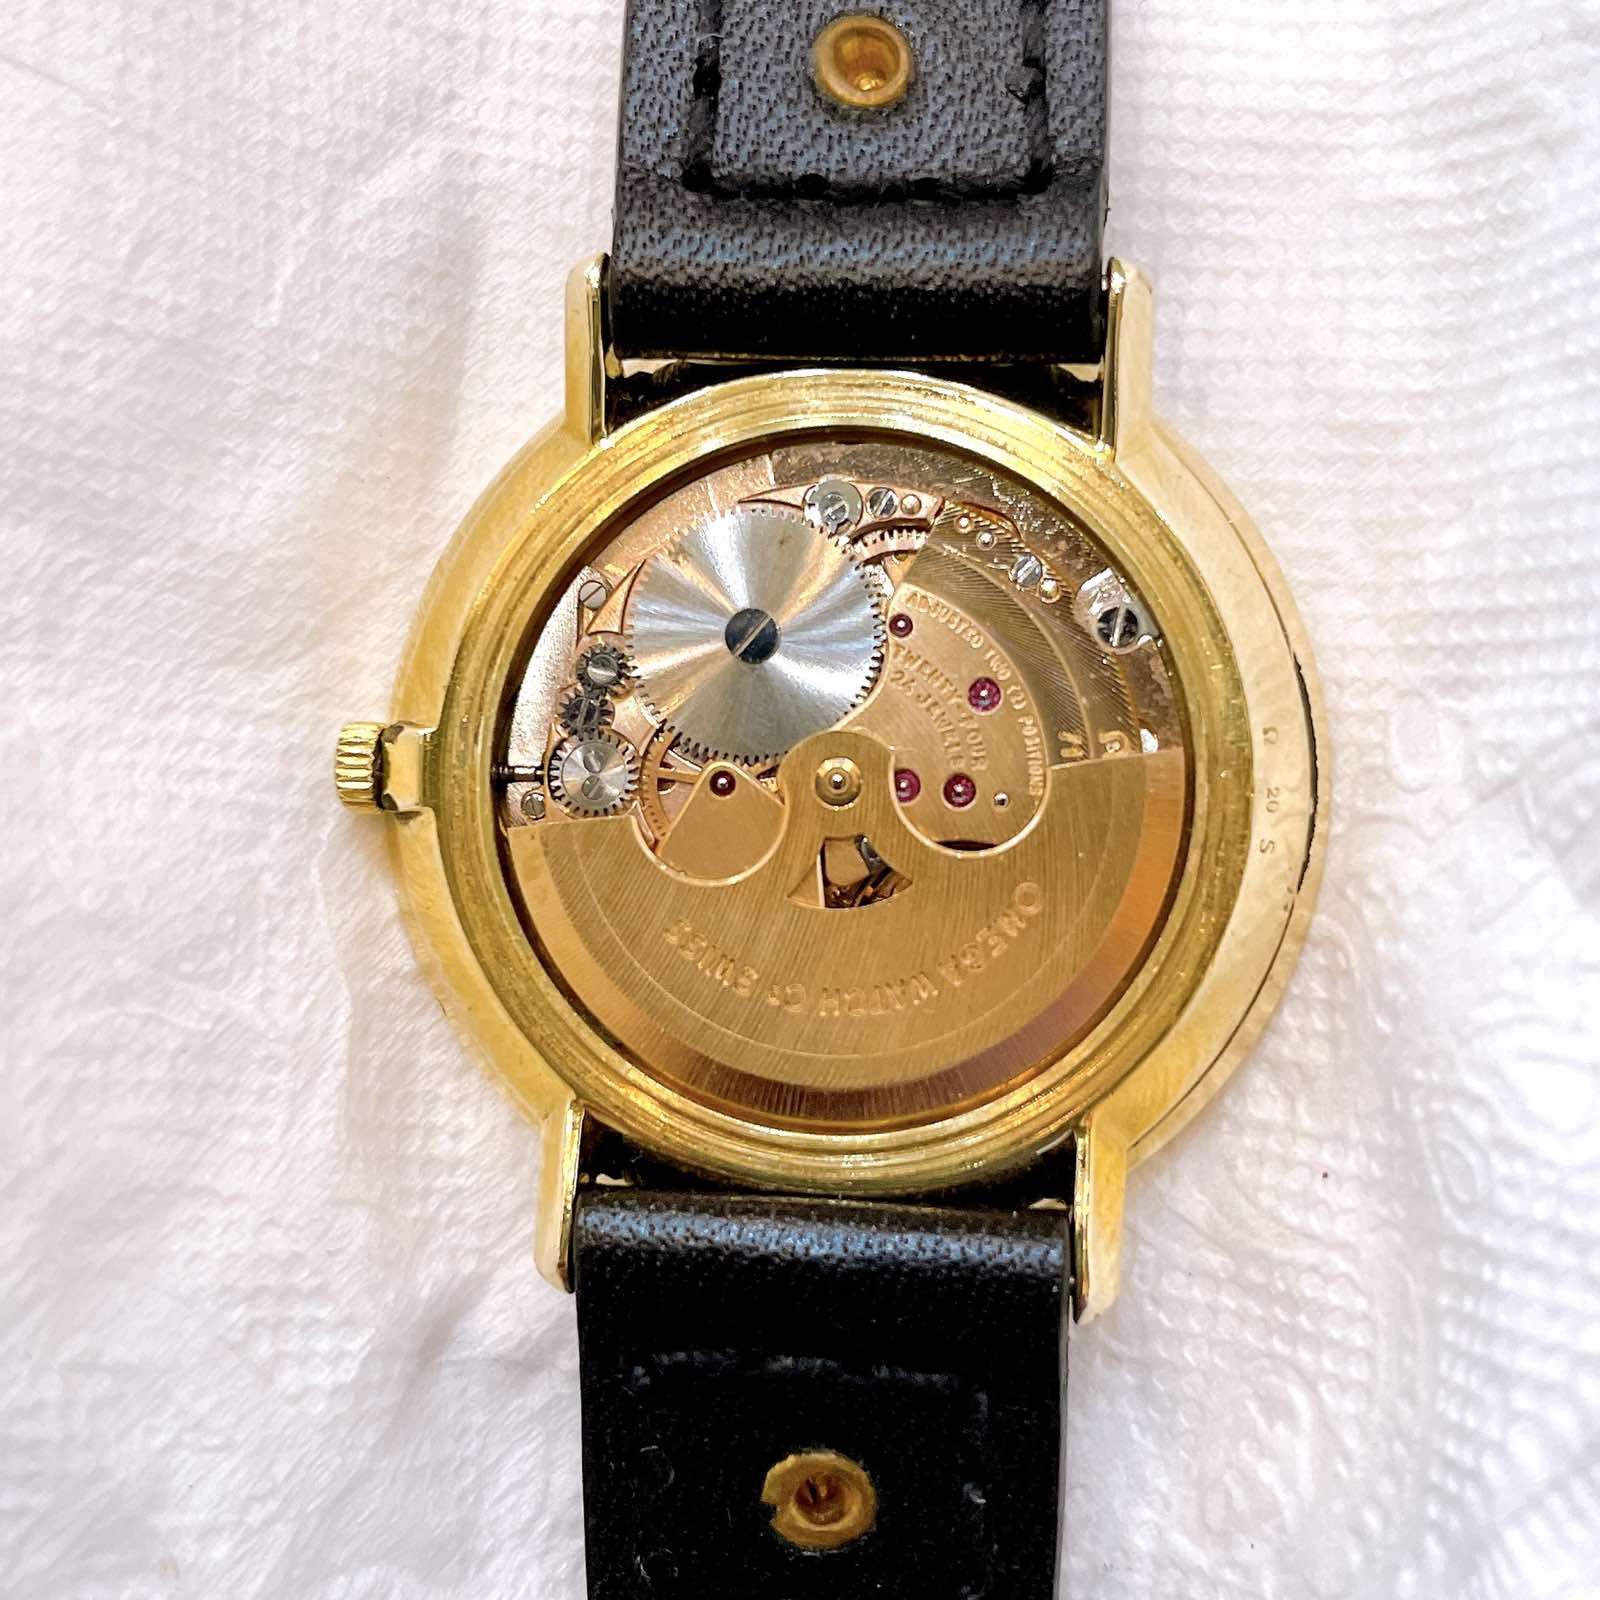 Đồng hồ Omega De Ville Automatic chính hãng Thụy Sĩ